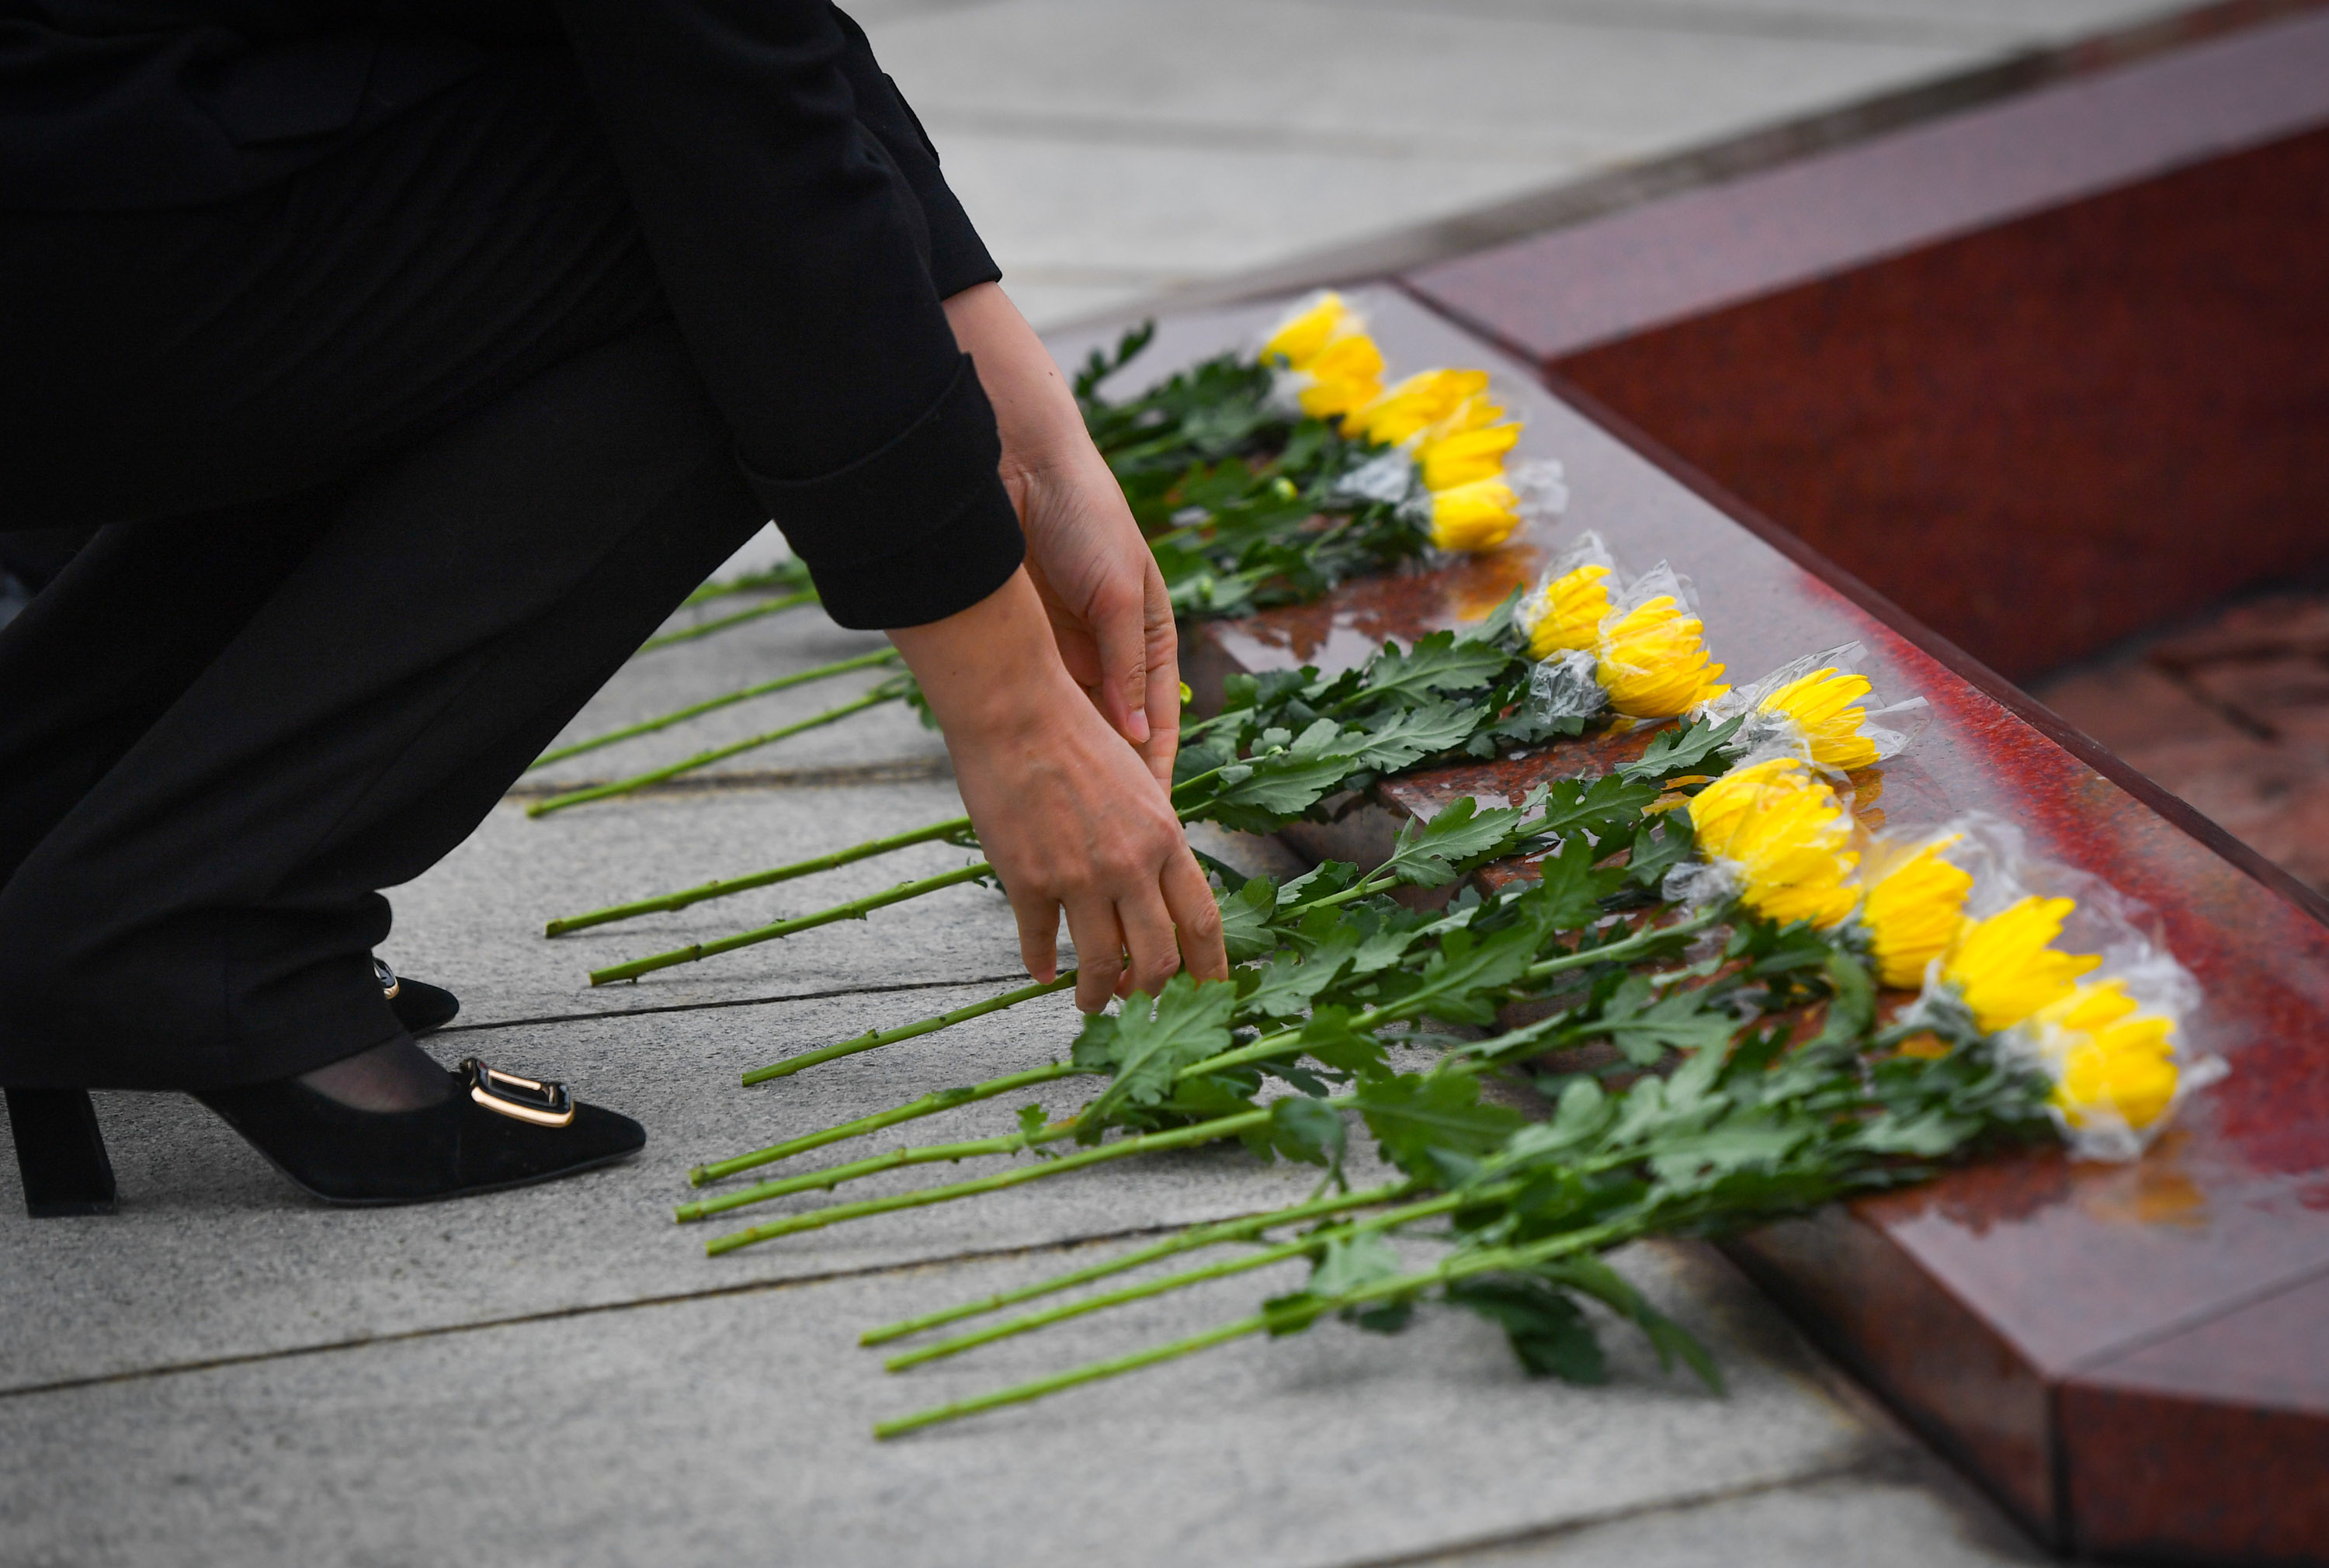 4月4日,广州市银河烈士陵园工作人员向烈士墓献花